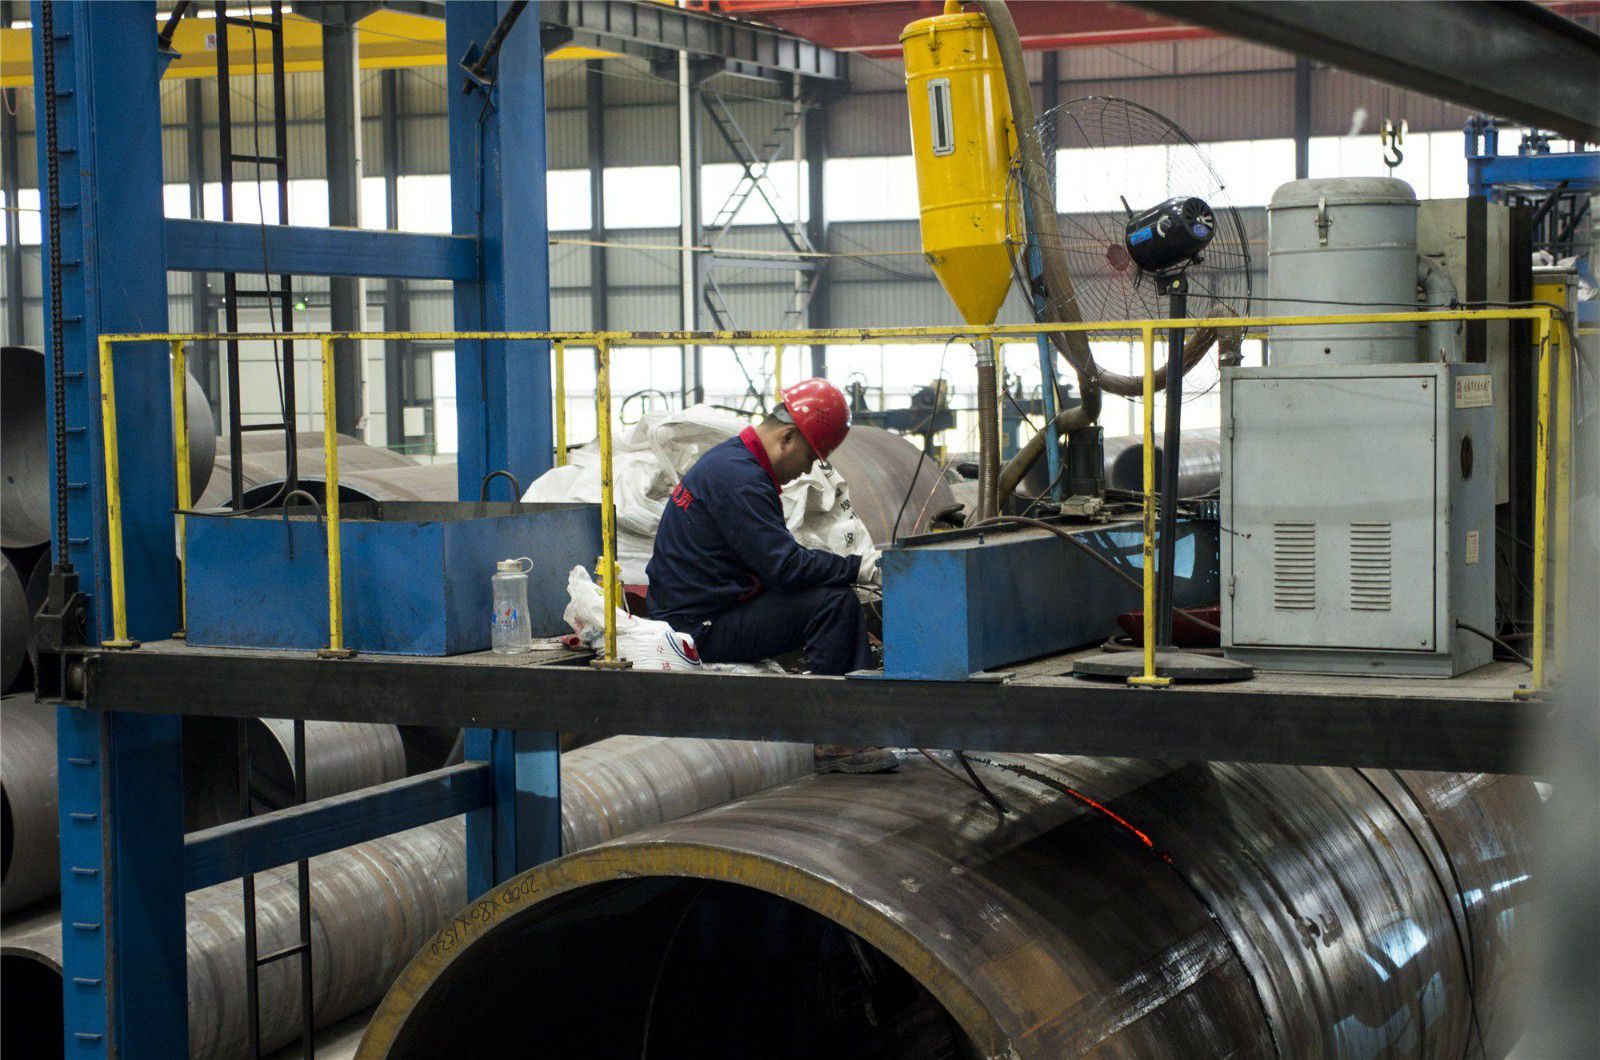 इज्जतपालQ235B straight seam welded pipeभयंकर रोलर कोस्टर बाजार दिखाने के लिए लंबी और छोटी प्रतियोगिताएं जारी हैं